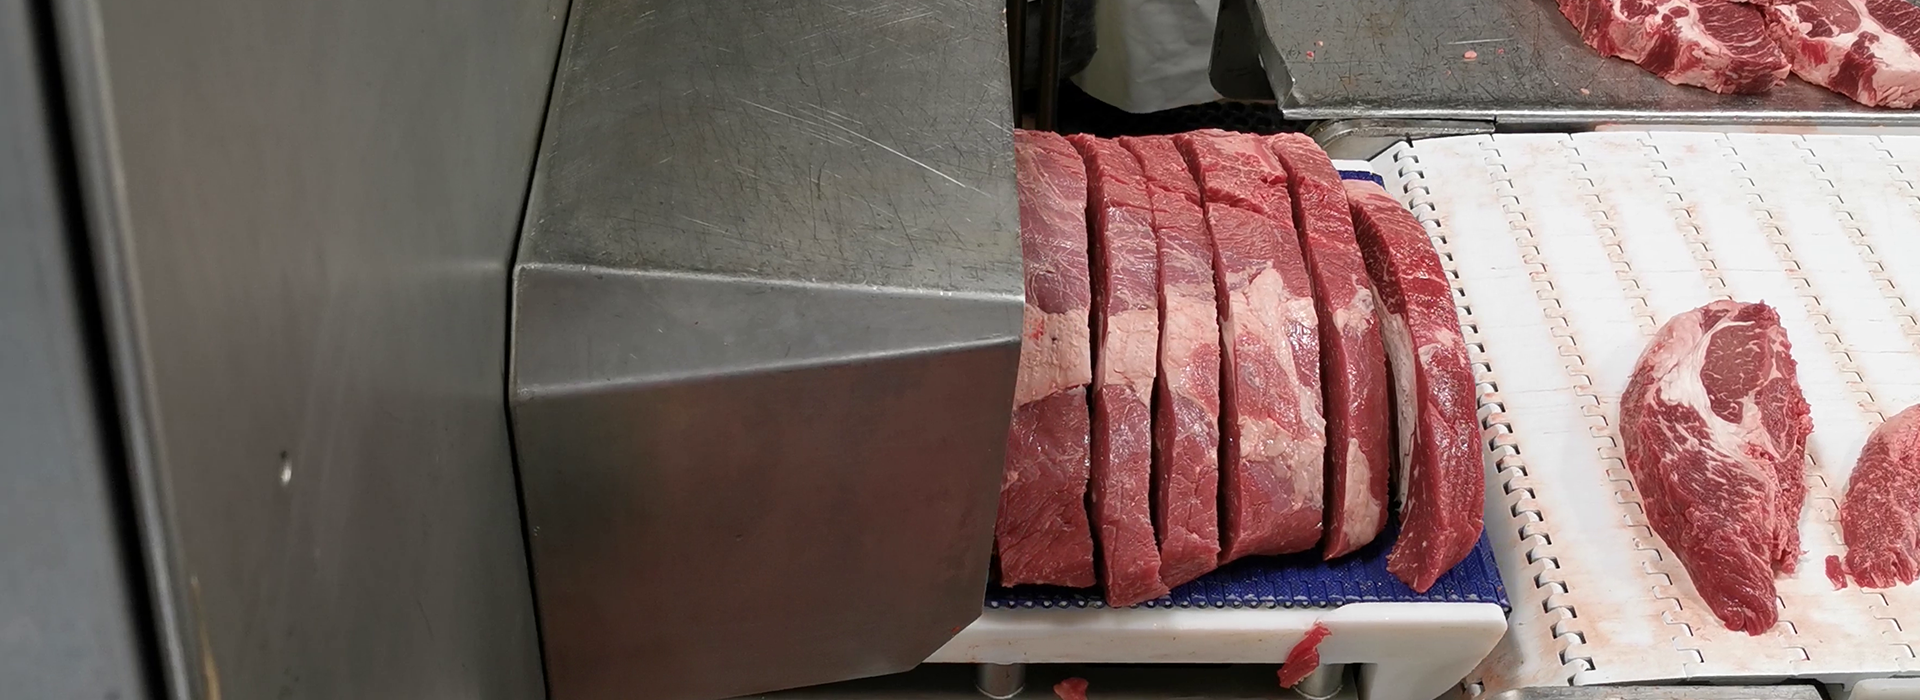 PORTIO 3D 切割机适用于切割牛排，里脊条，腌肉，里脊，猪里脊等